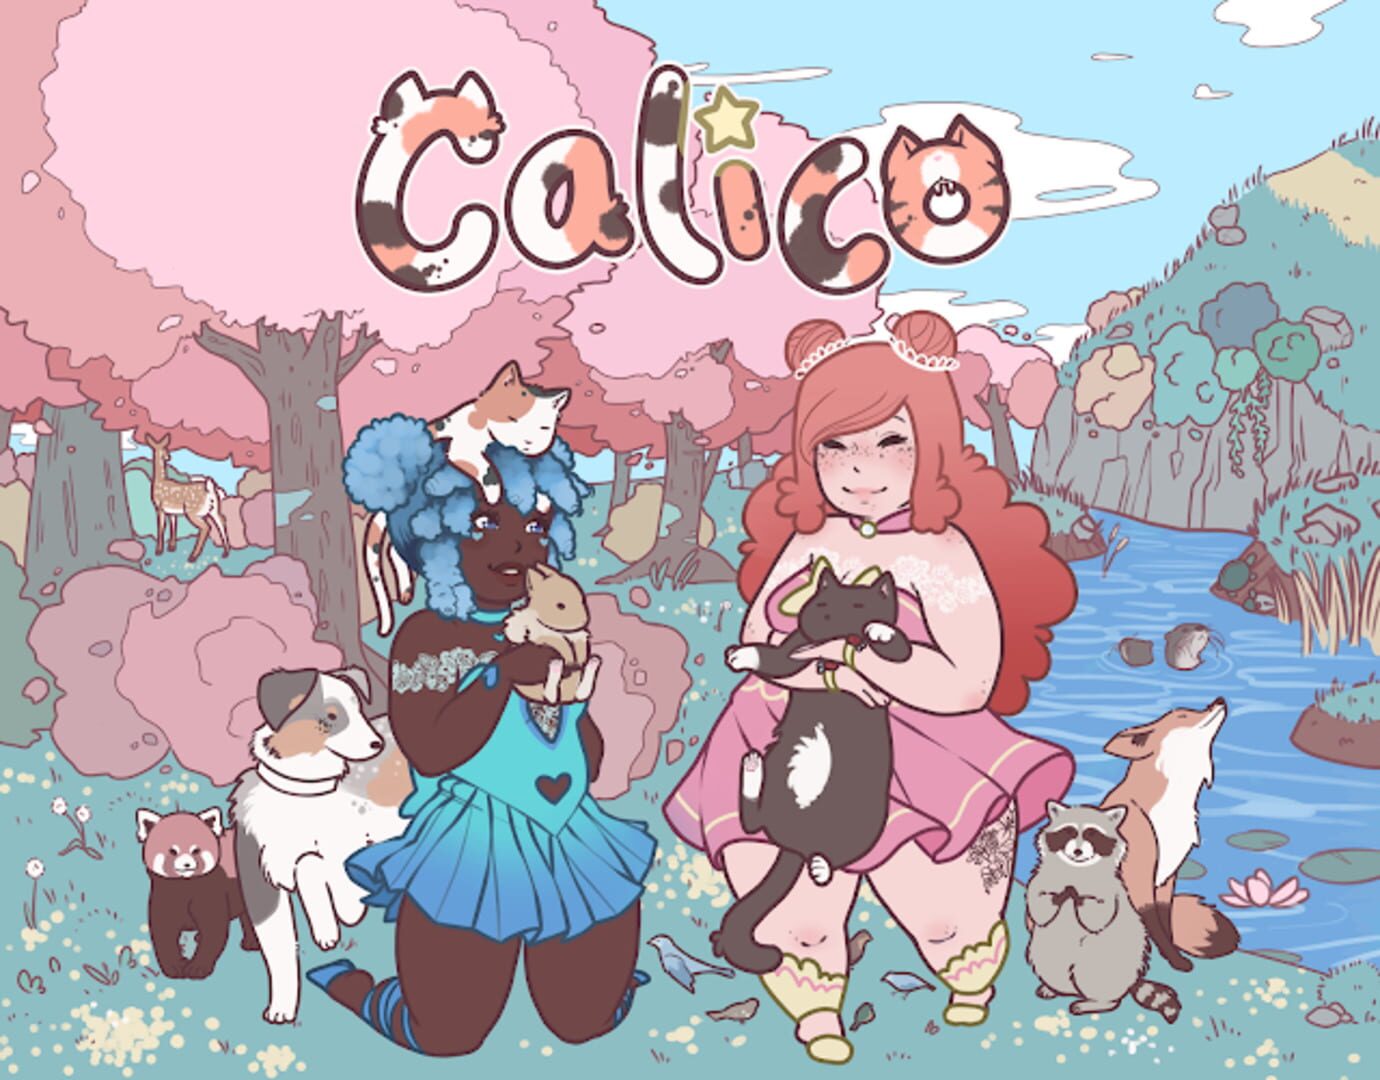 Calico artwork